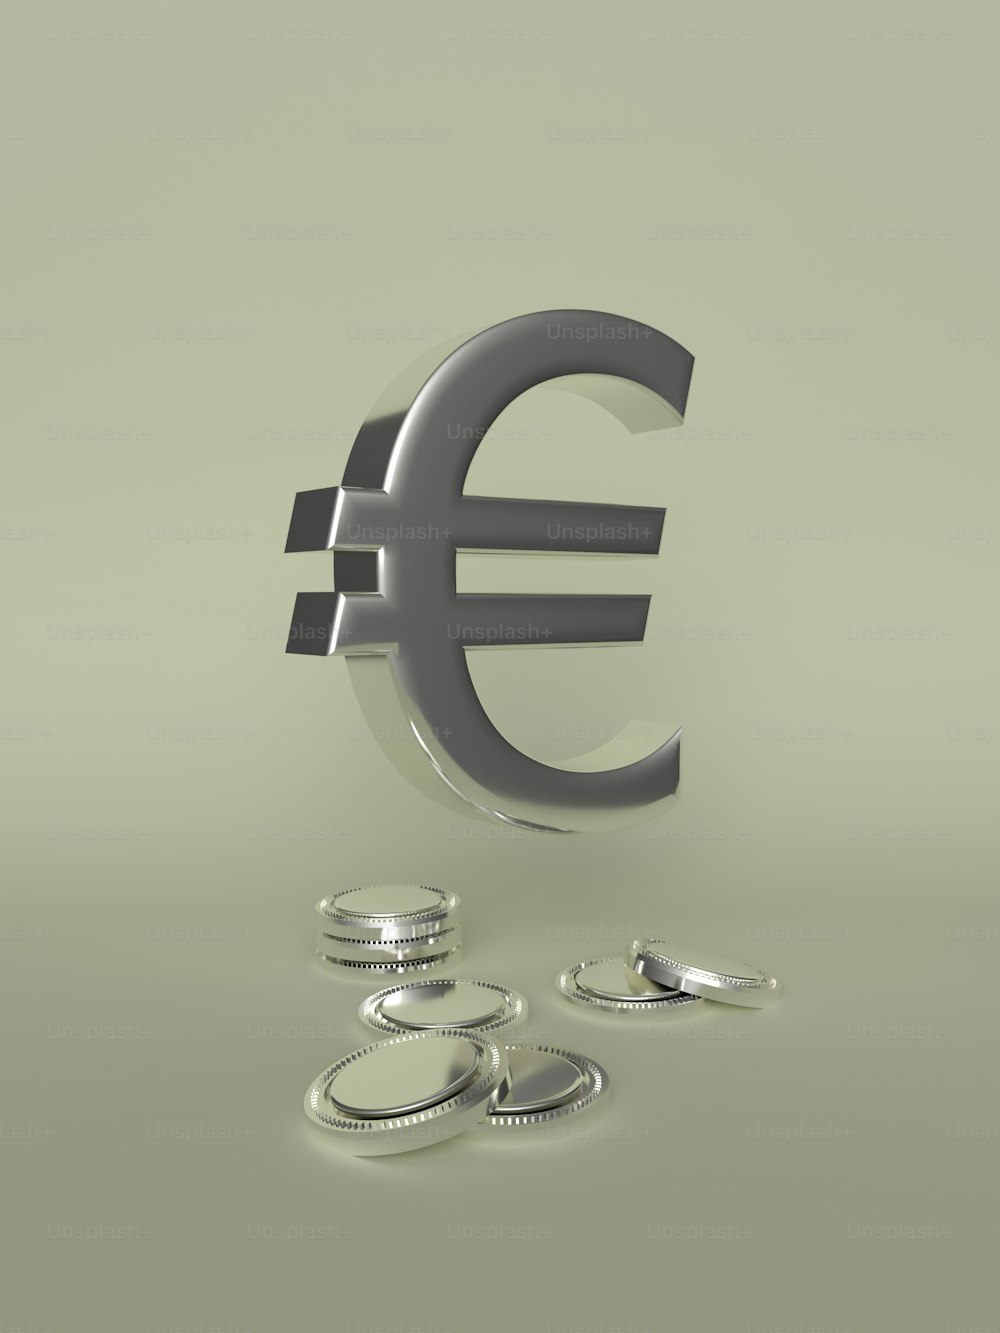 Un signo de euro de metal con algunas monedas a su alrededor